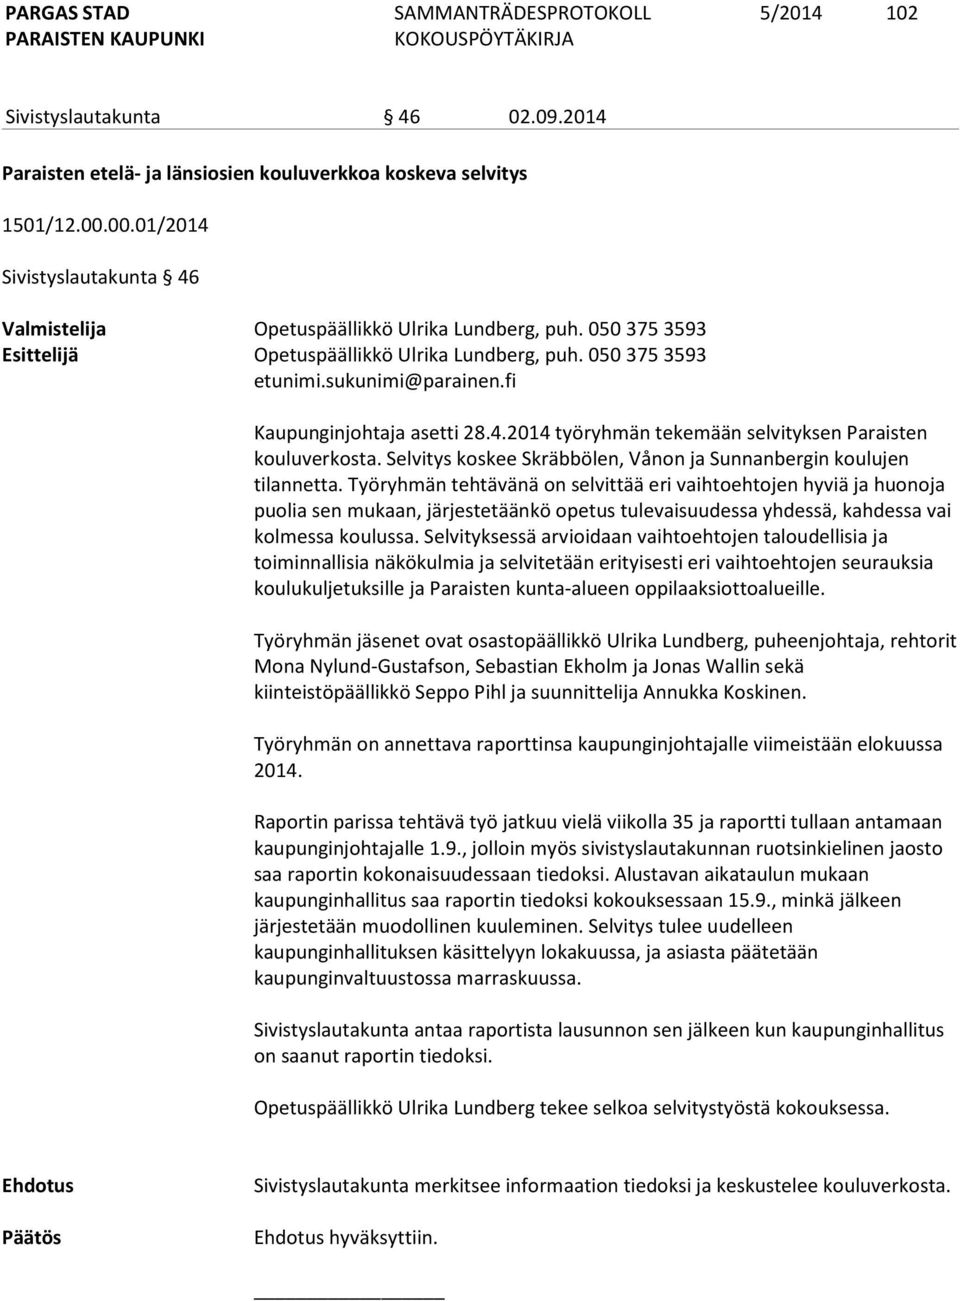 Selvitys koskee Skräbbölen, Vånon ja Sunnanbergin koulujen tilannetta.